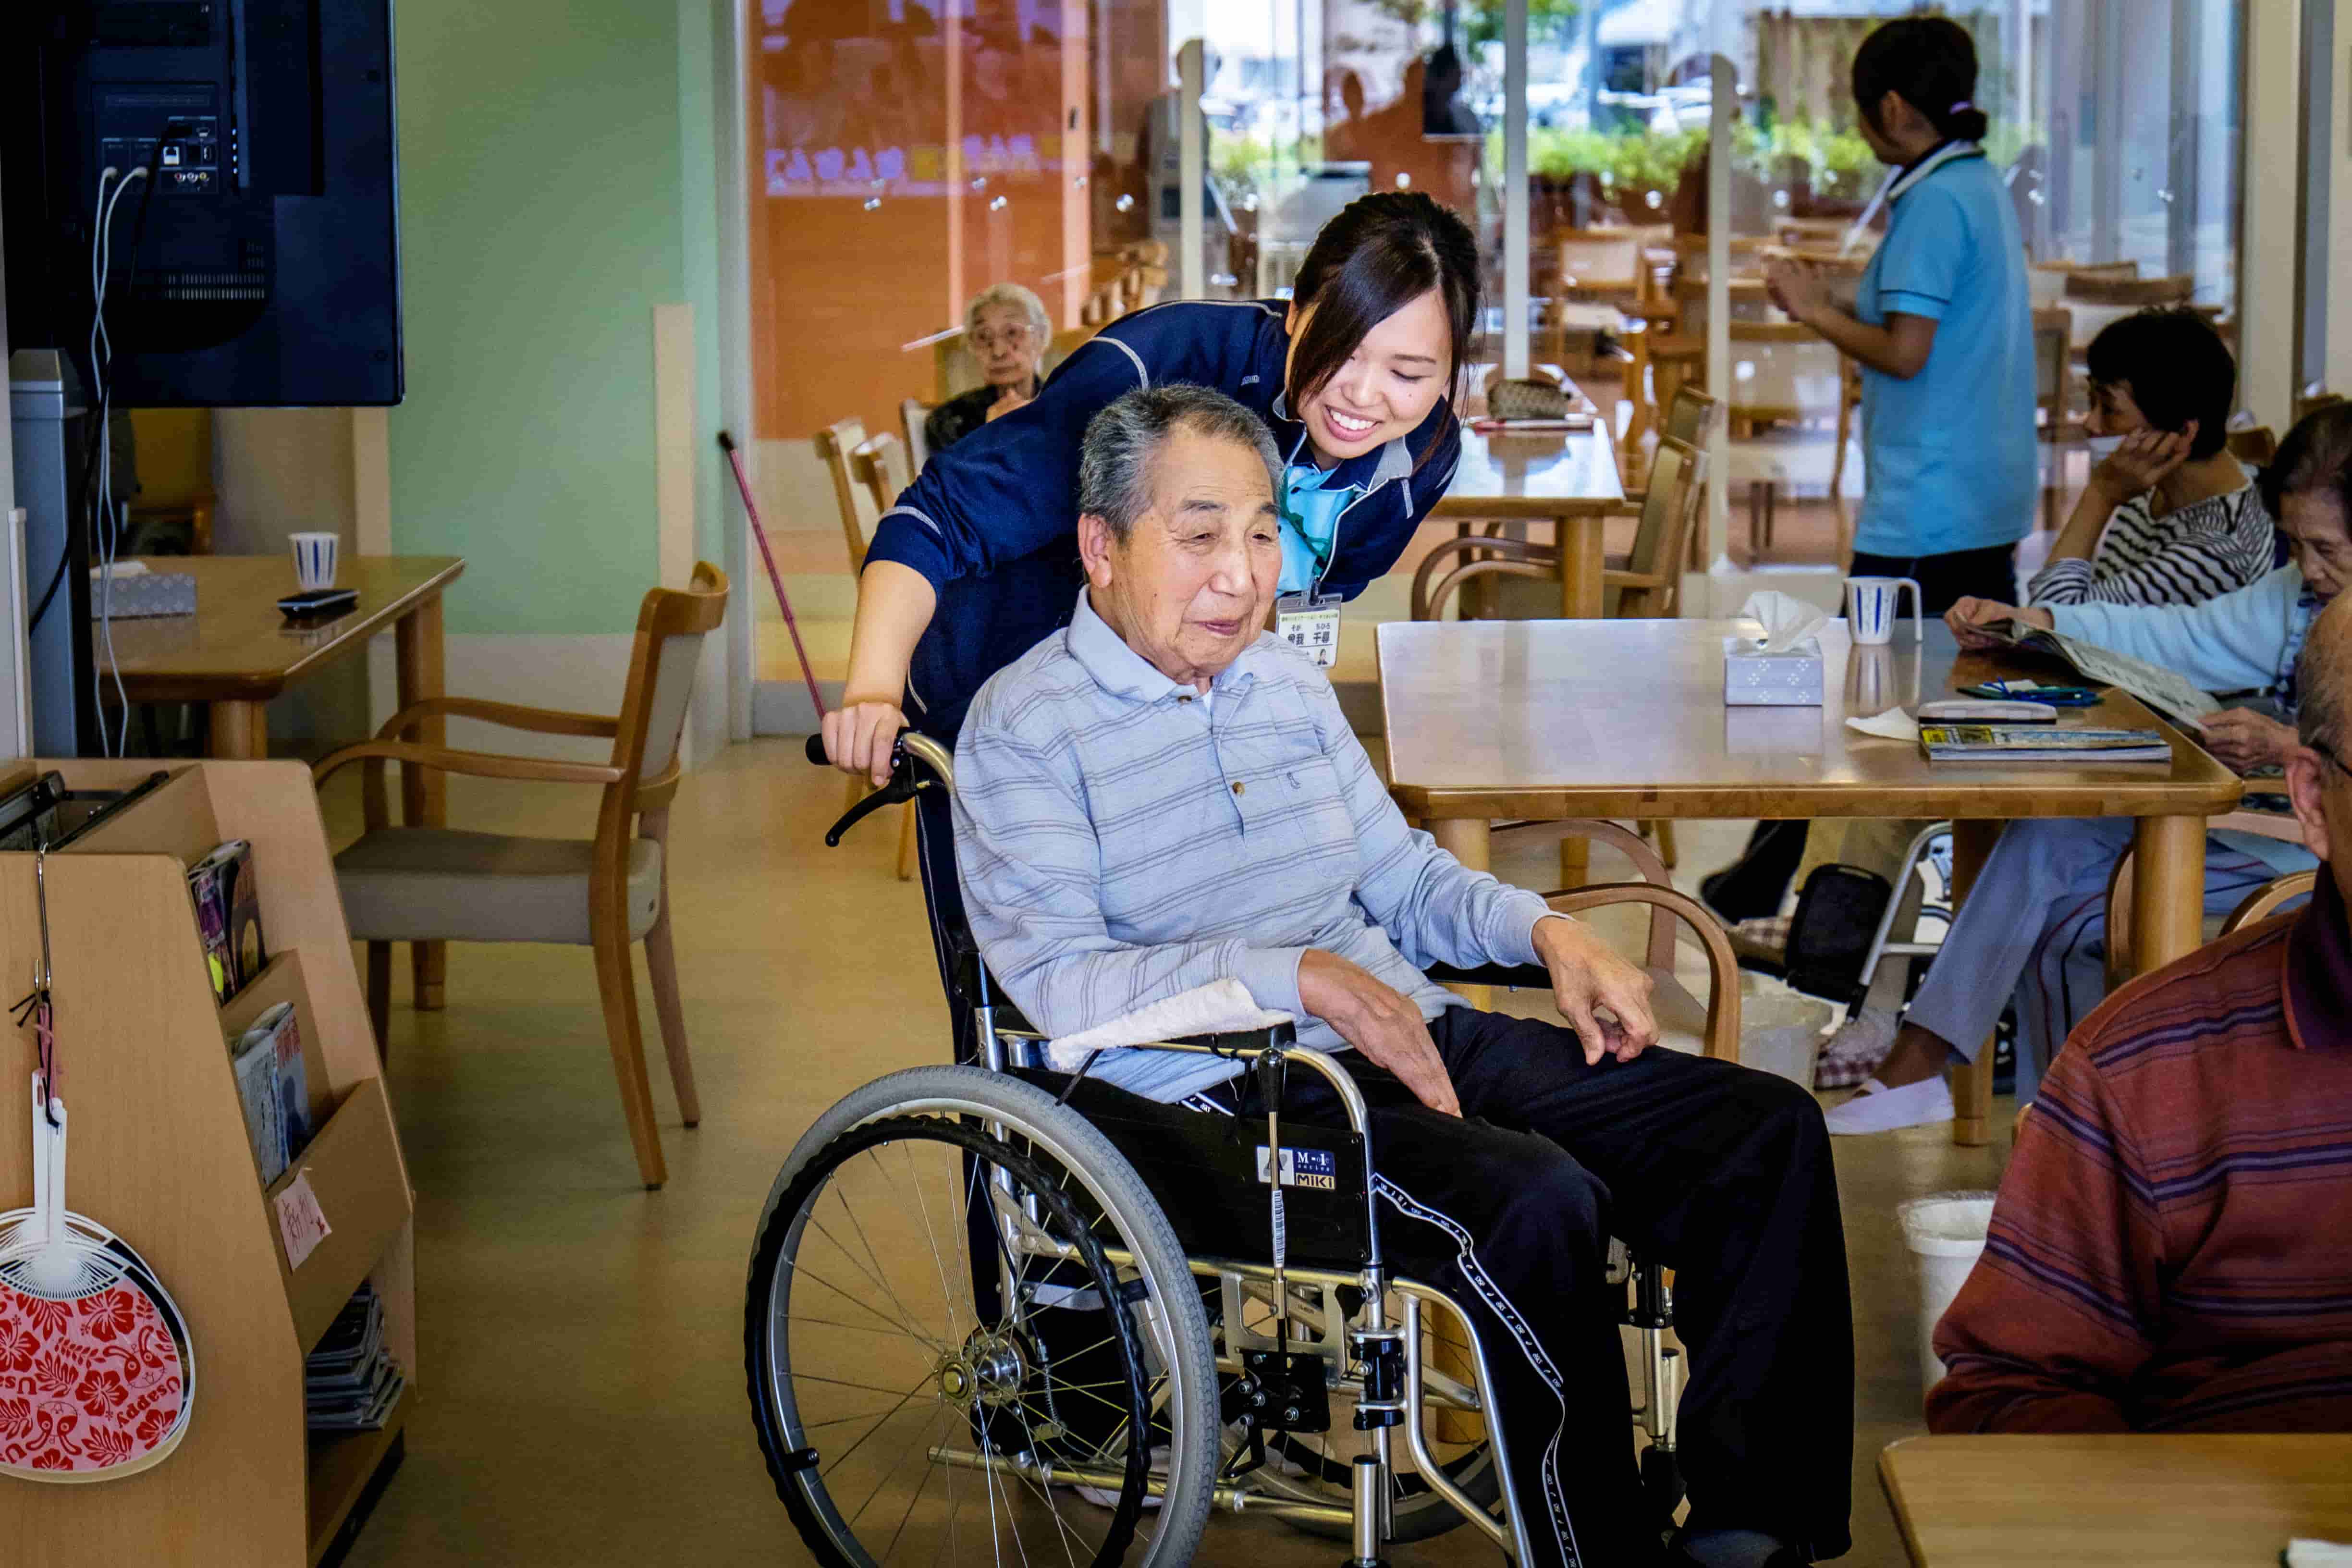 older person in a care centre